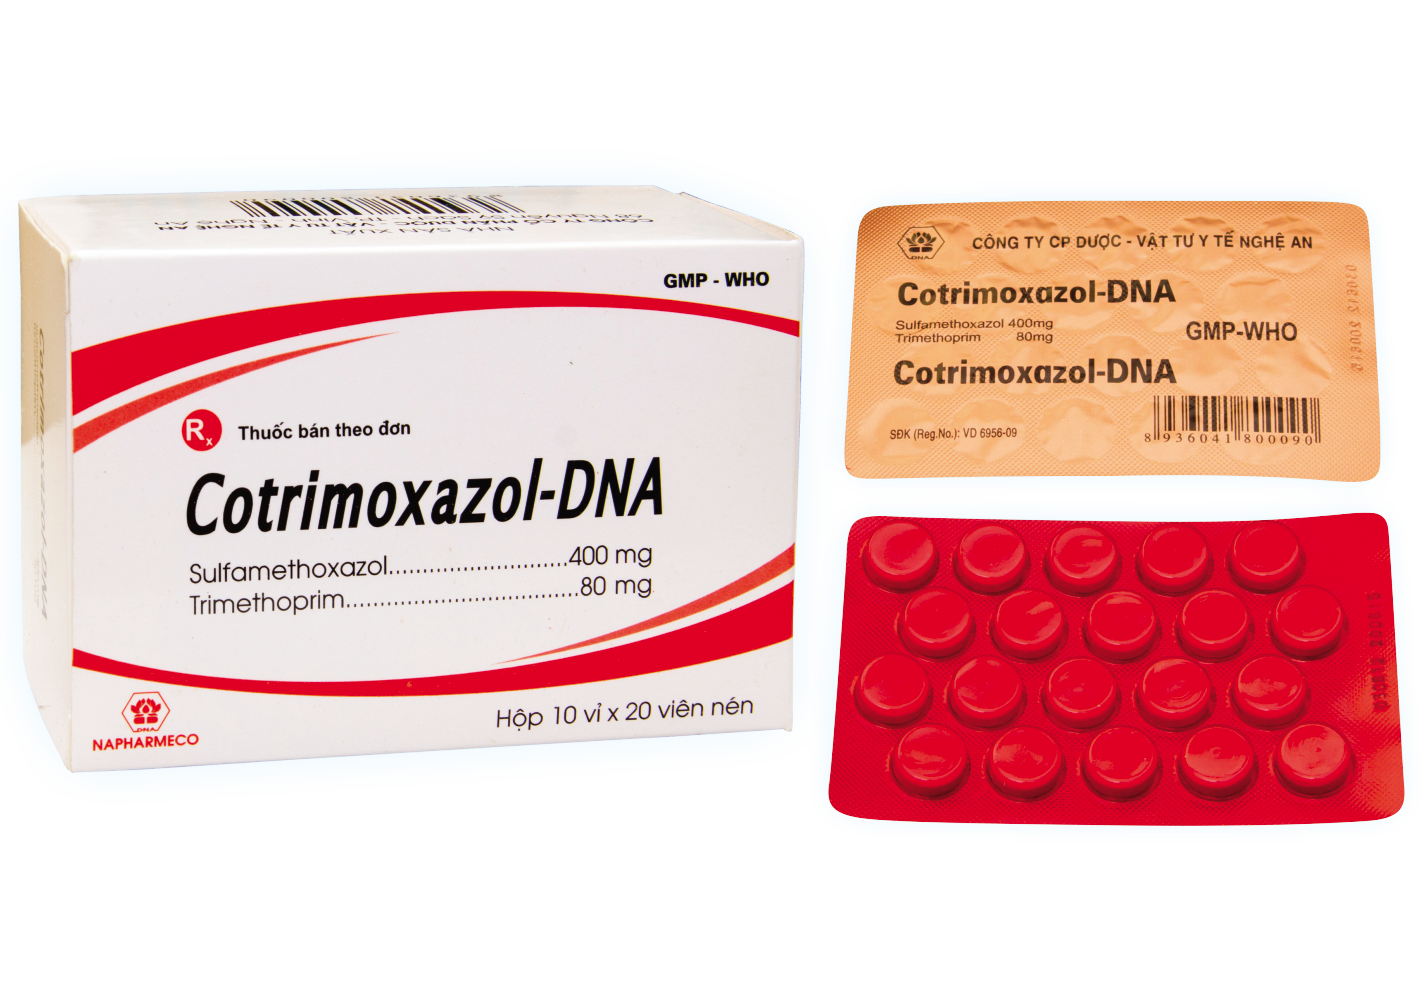 Cotrimoxazol - DNA